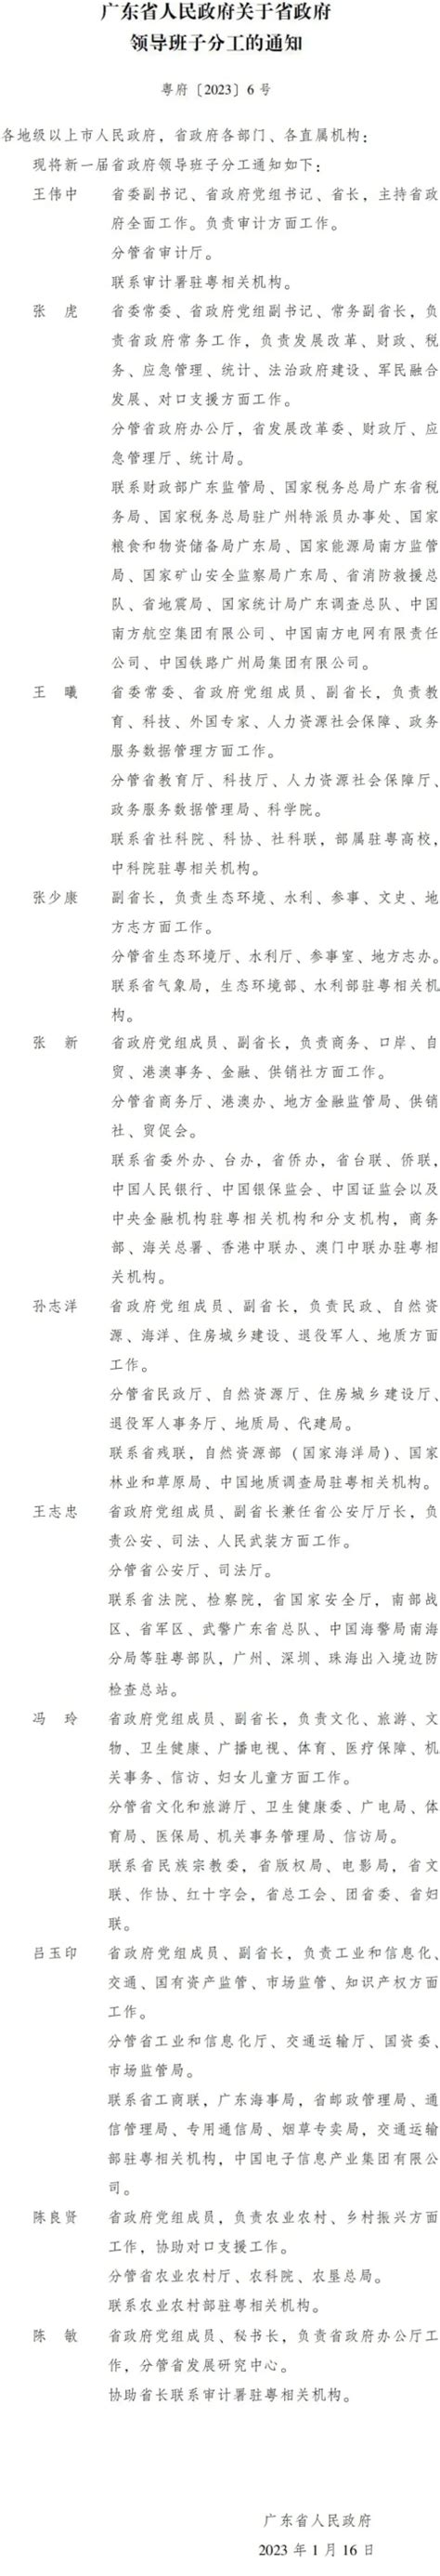 广东省政府领导班子最新分工公布 广东省乡村振兴局